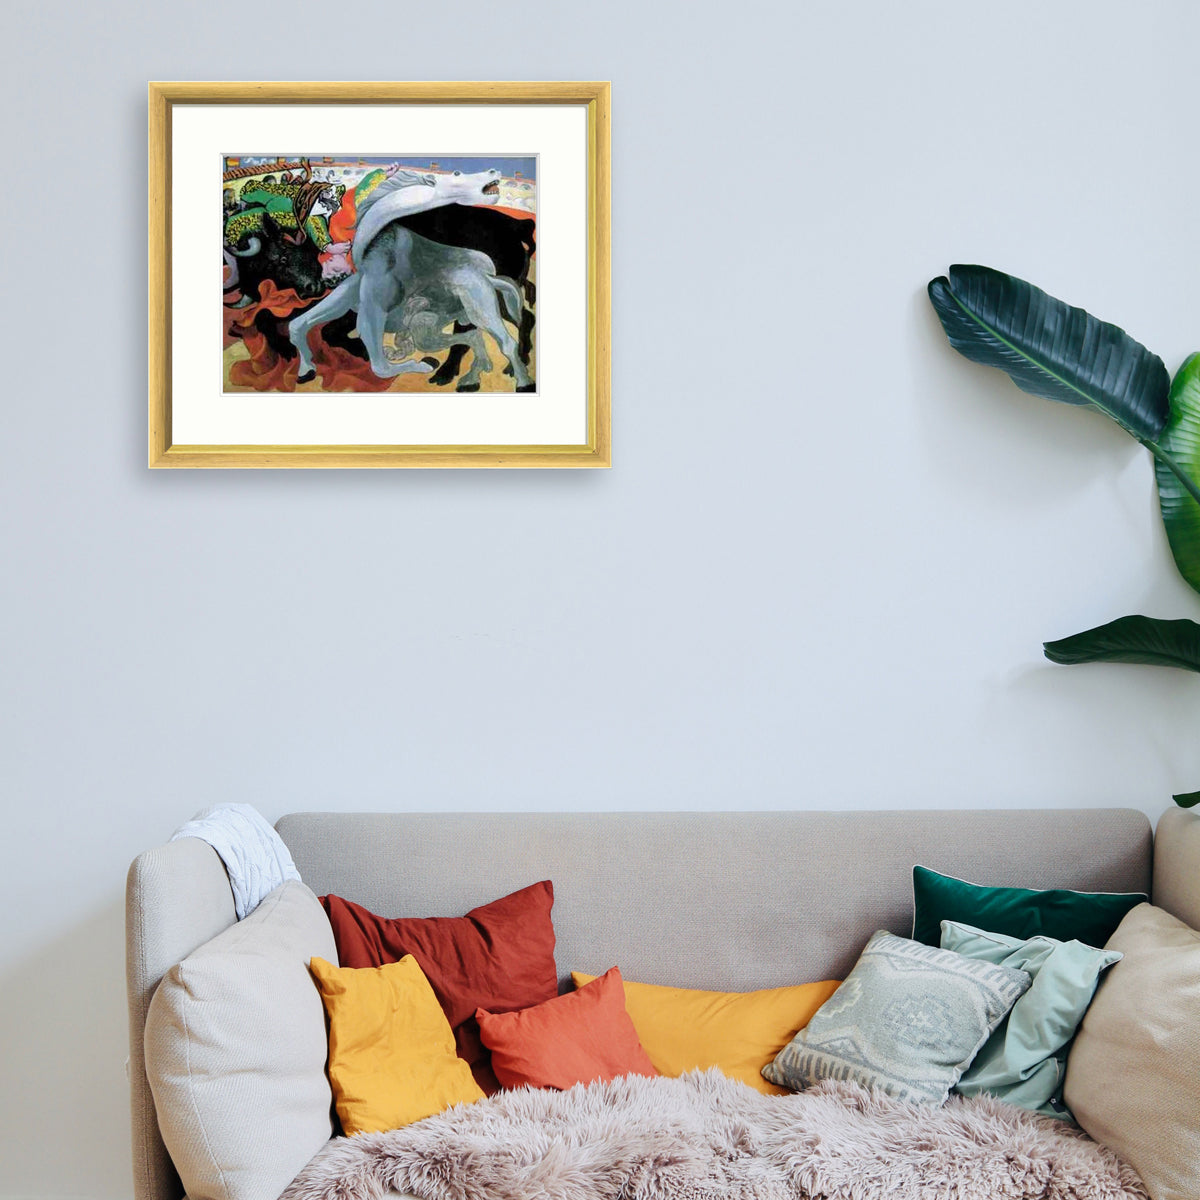 Picasso - Corrida, La mort du torero Le Cadre Décoration intérieure Tableaux cadre bois affiche poster oeuvre d'art rapport qualité prix pas cher peintre célèbre